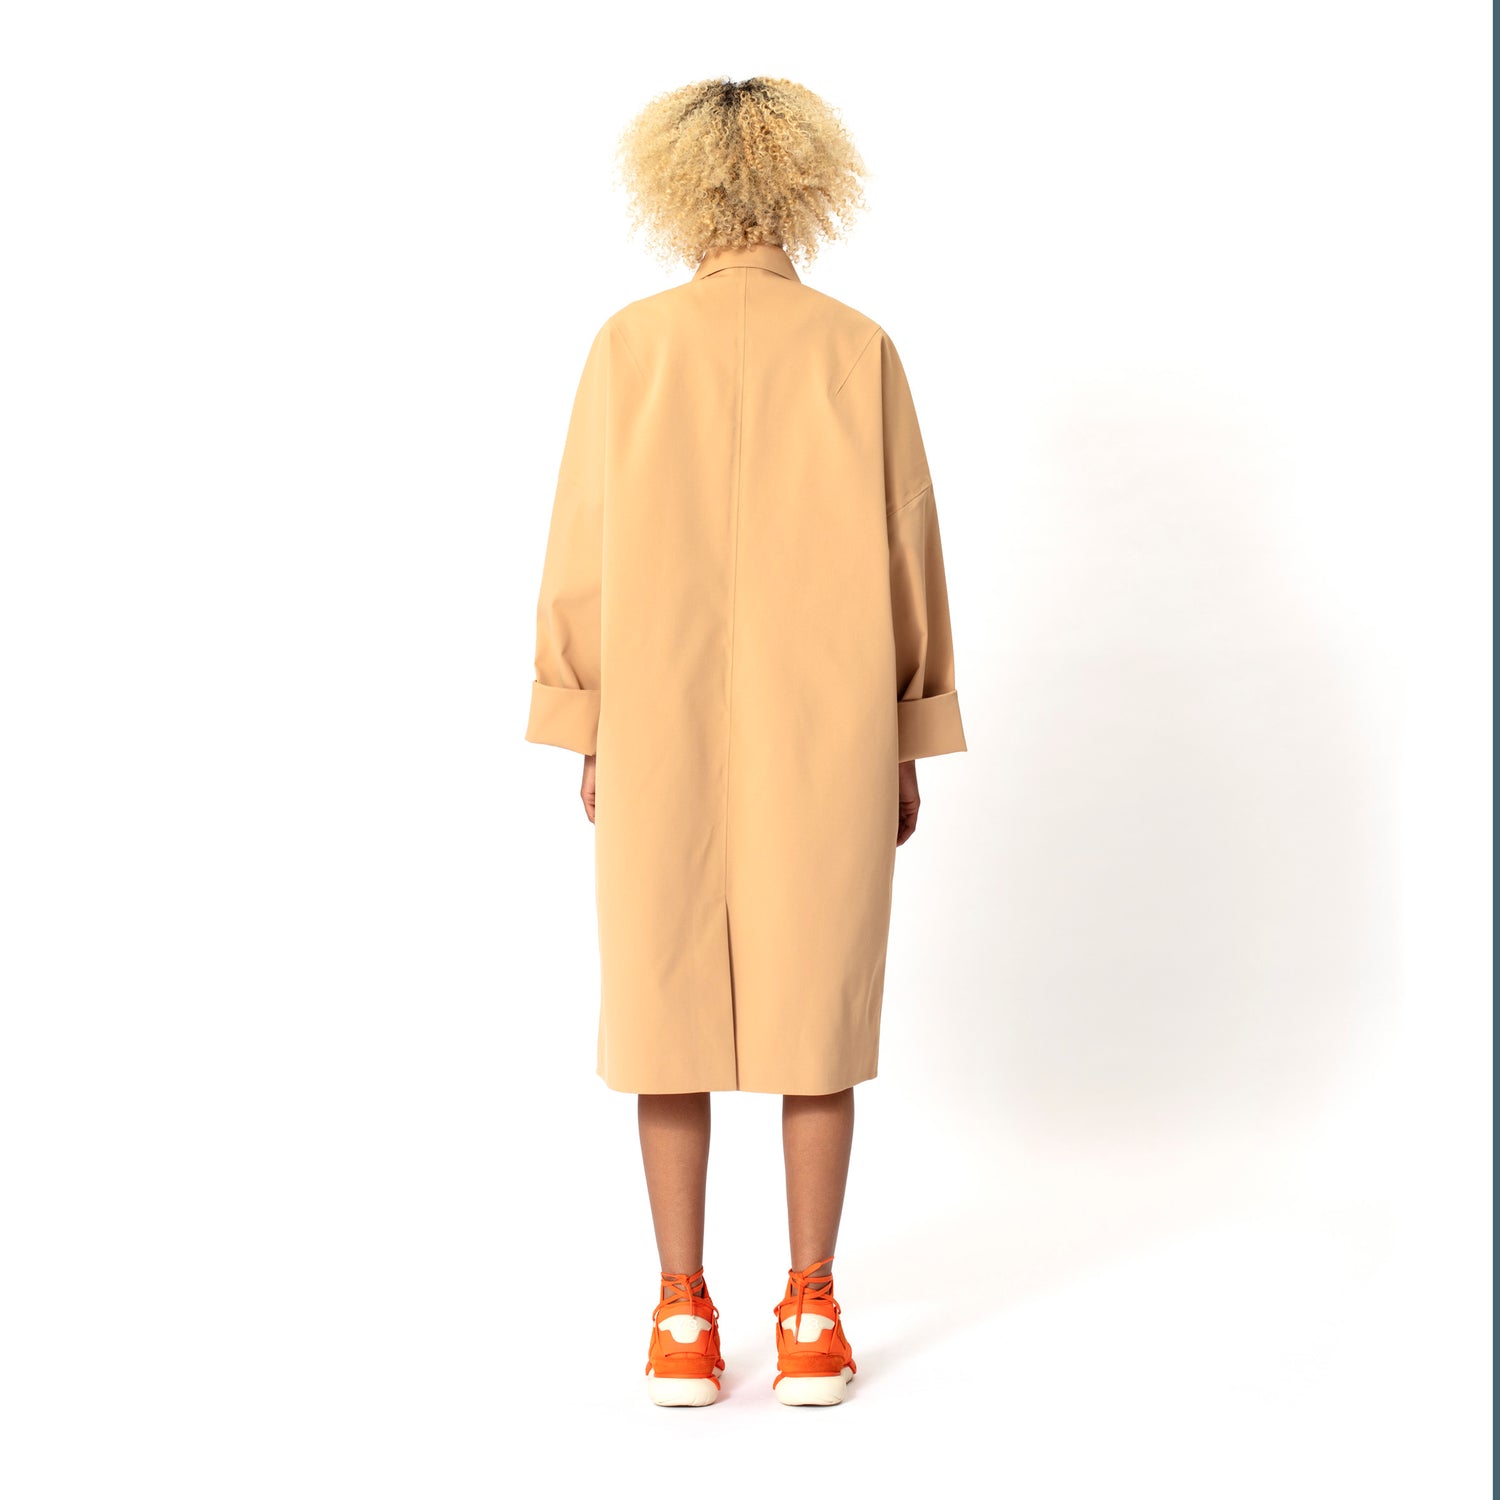 GOFRANCK-THE-DRY-Product-Image-women-rainjacket